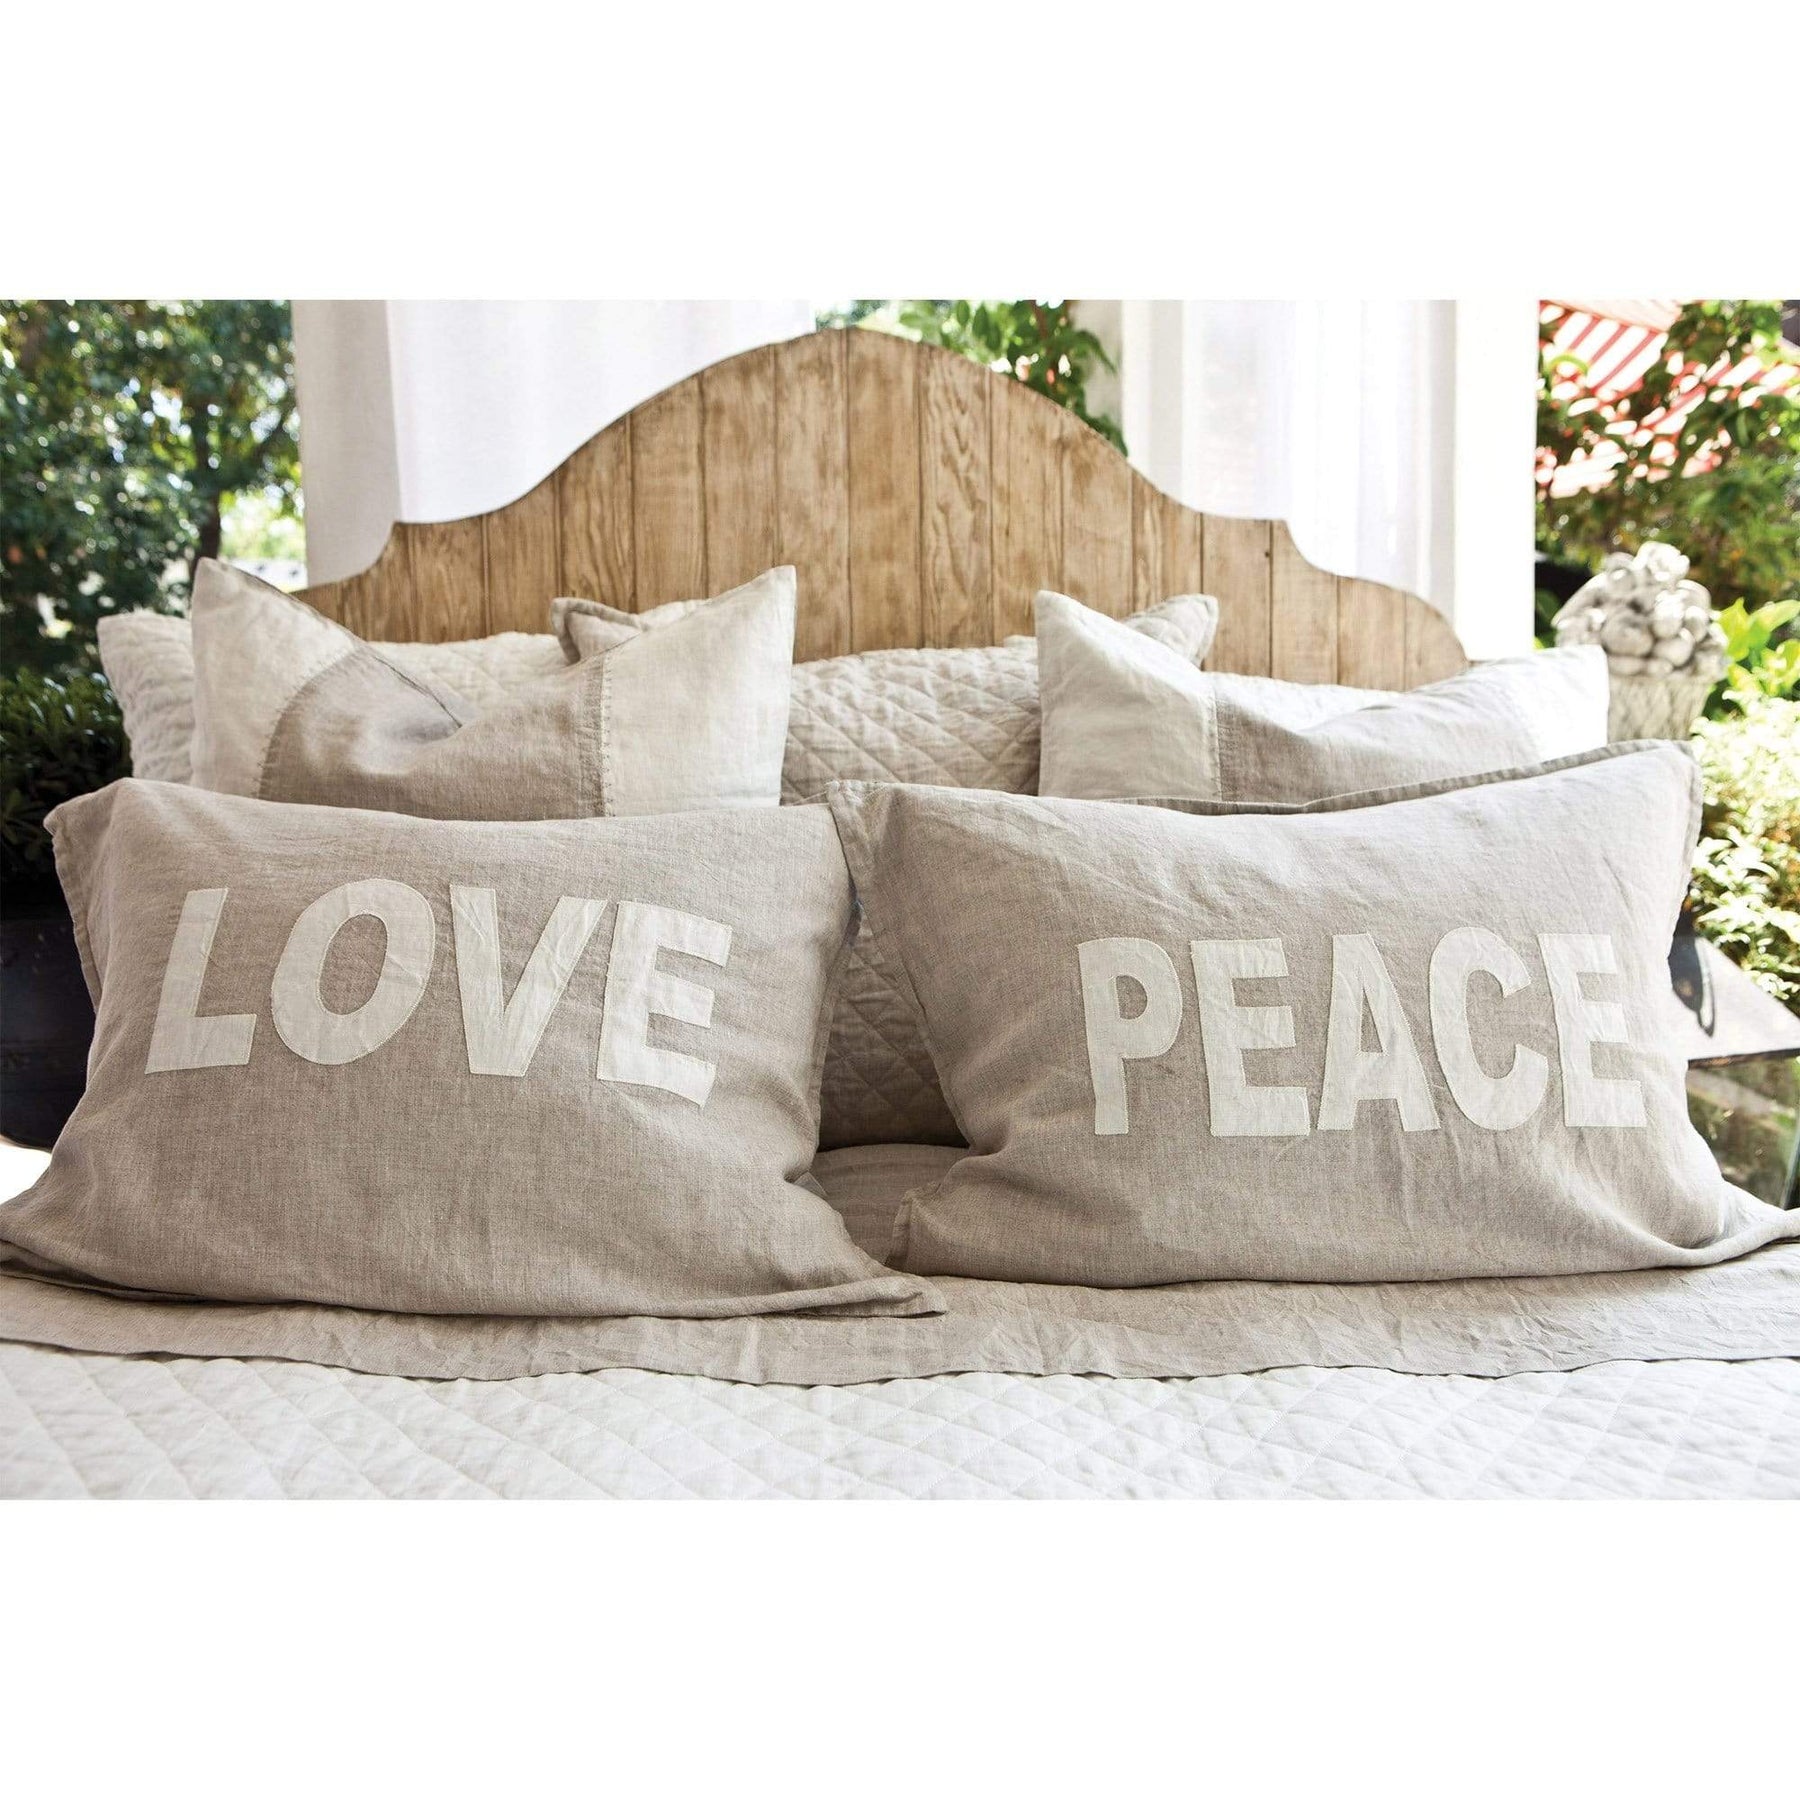 https://meadowblu.com/cdn/shop/products/pom-pom-at-home-love-peace-shams-decor-pom-pom-o-0600-f-12-13928726921267_1800x1800.jpg?v=1607350256